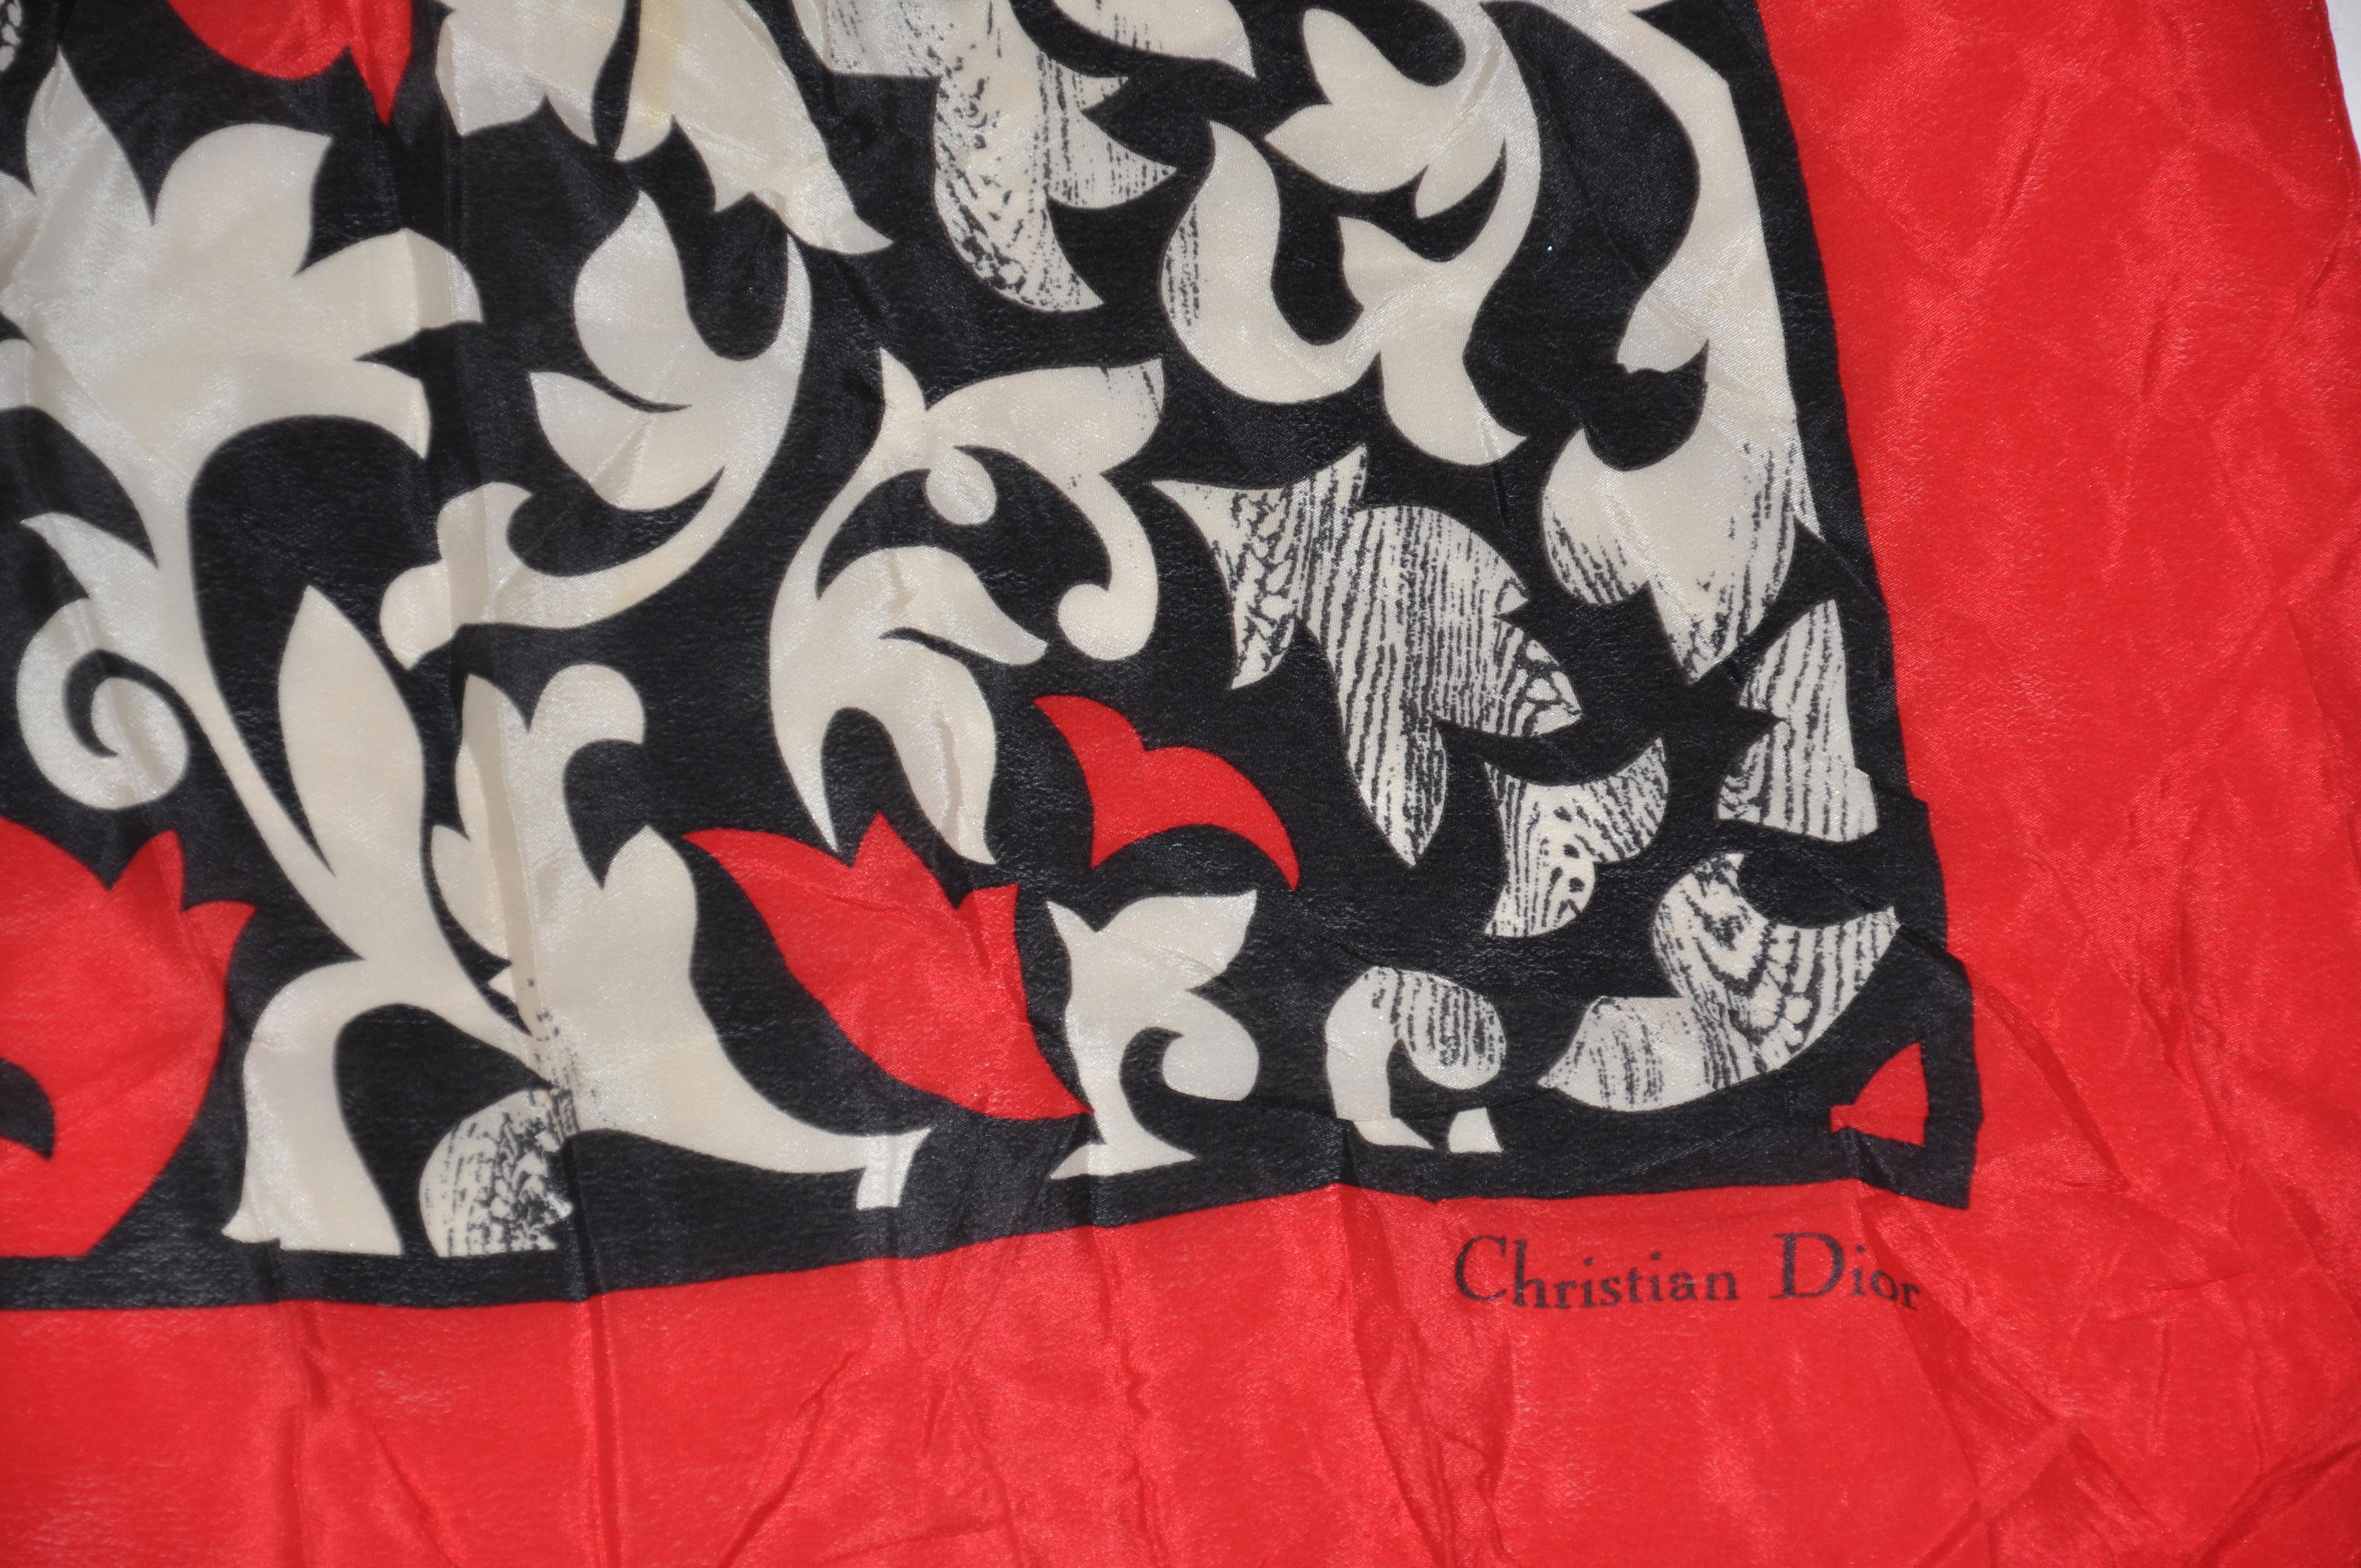     Les palettes abstraites audacieuses et vives de Christian Dior sont entourées de bordures rouges. Des bords roulés terminent cette belle écharpe en soie qui mesure 33 pouces sur 34 pouces. Fabriquées en Italie.